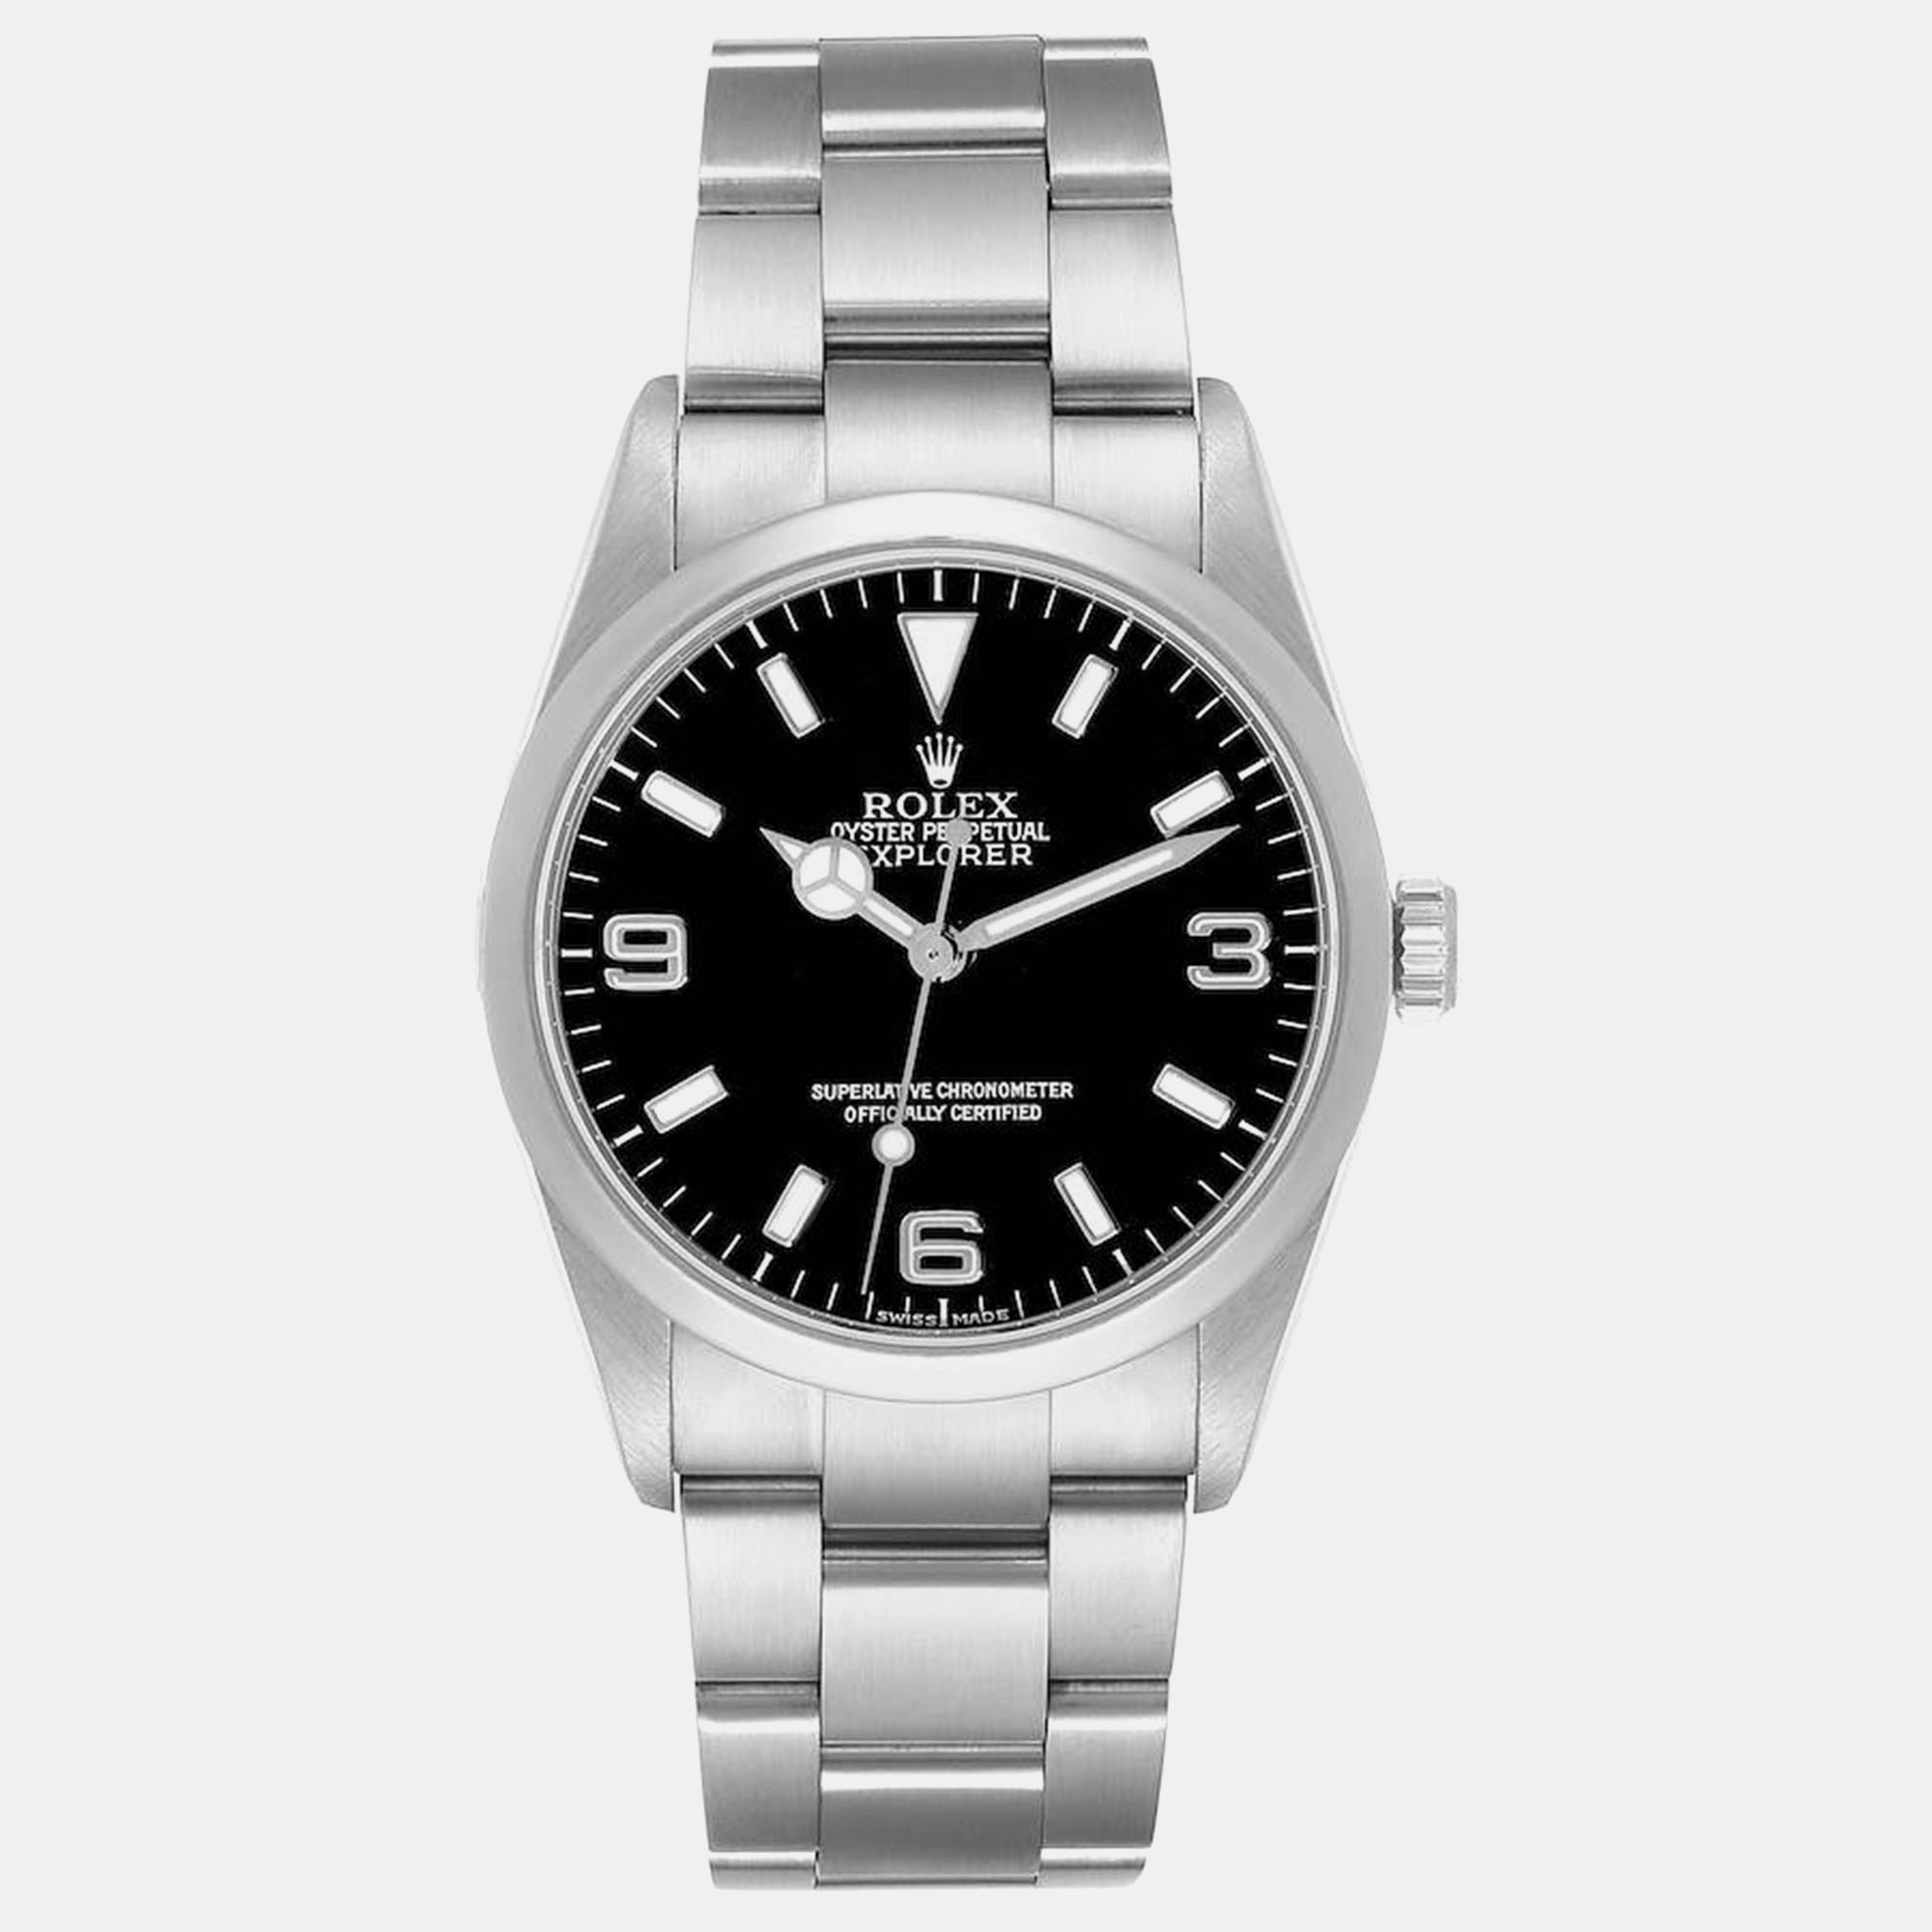 Rolex explorer i black dial steel men's watch 114270 36 mm